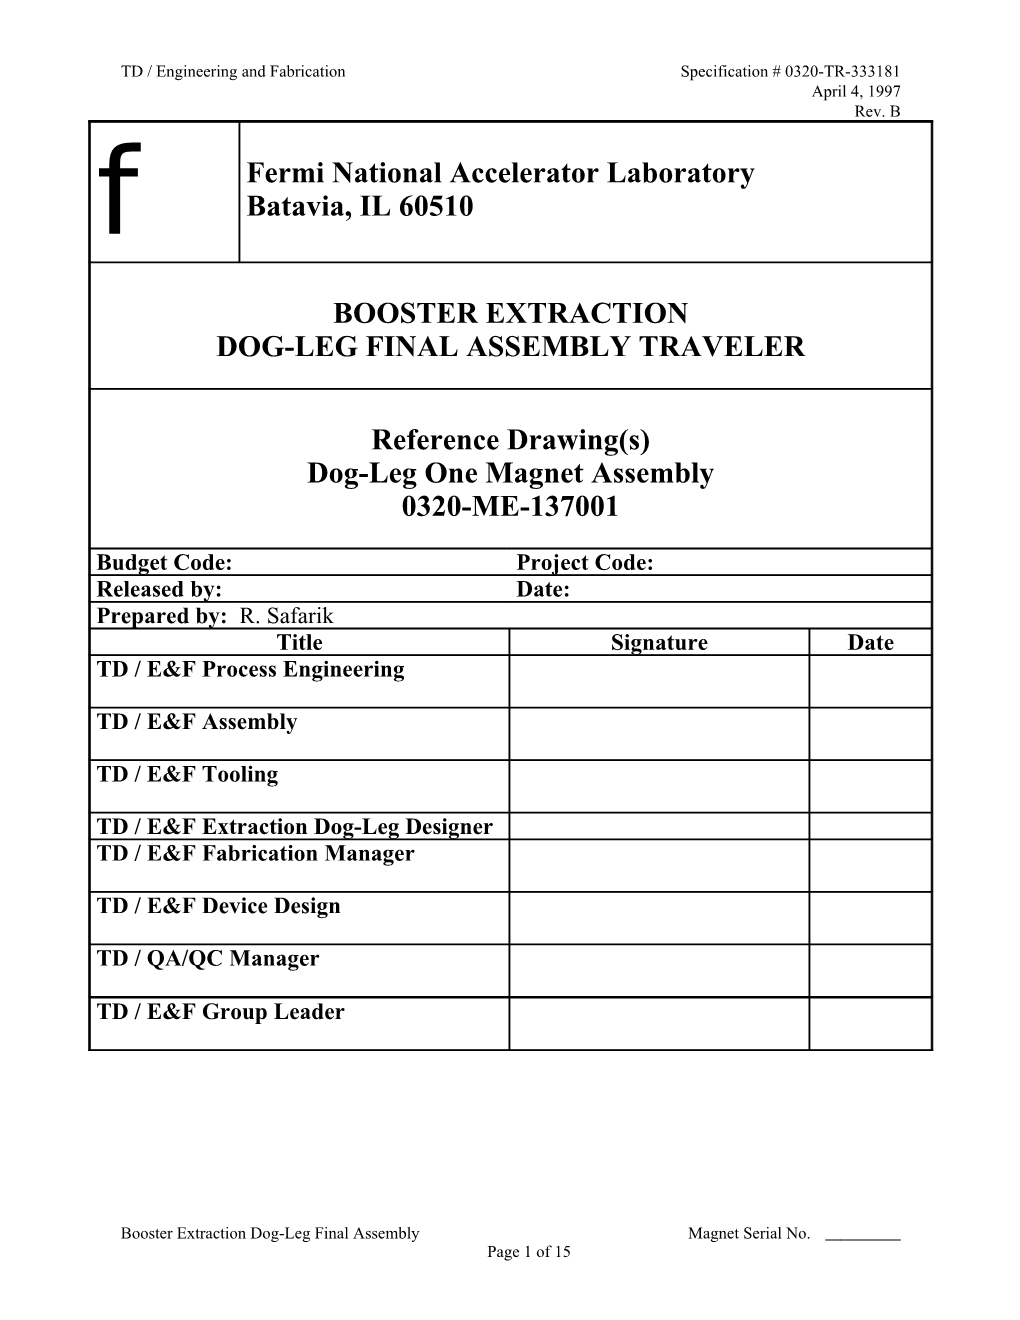 Booster Dogleg Final Assembly - Single